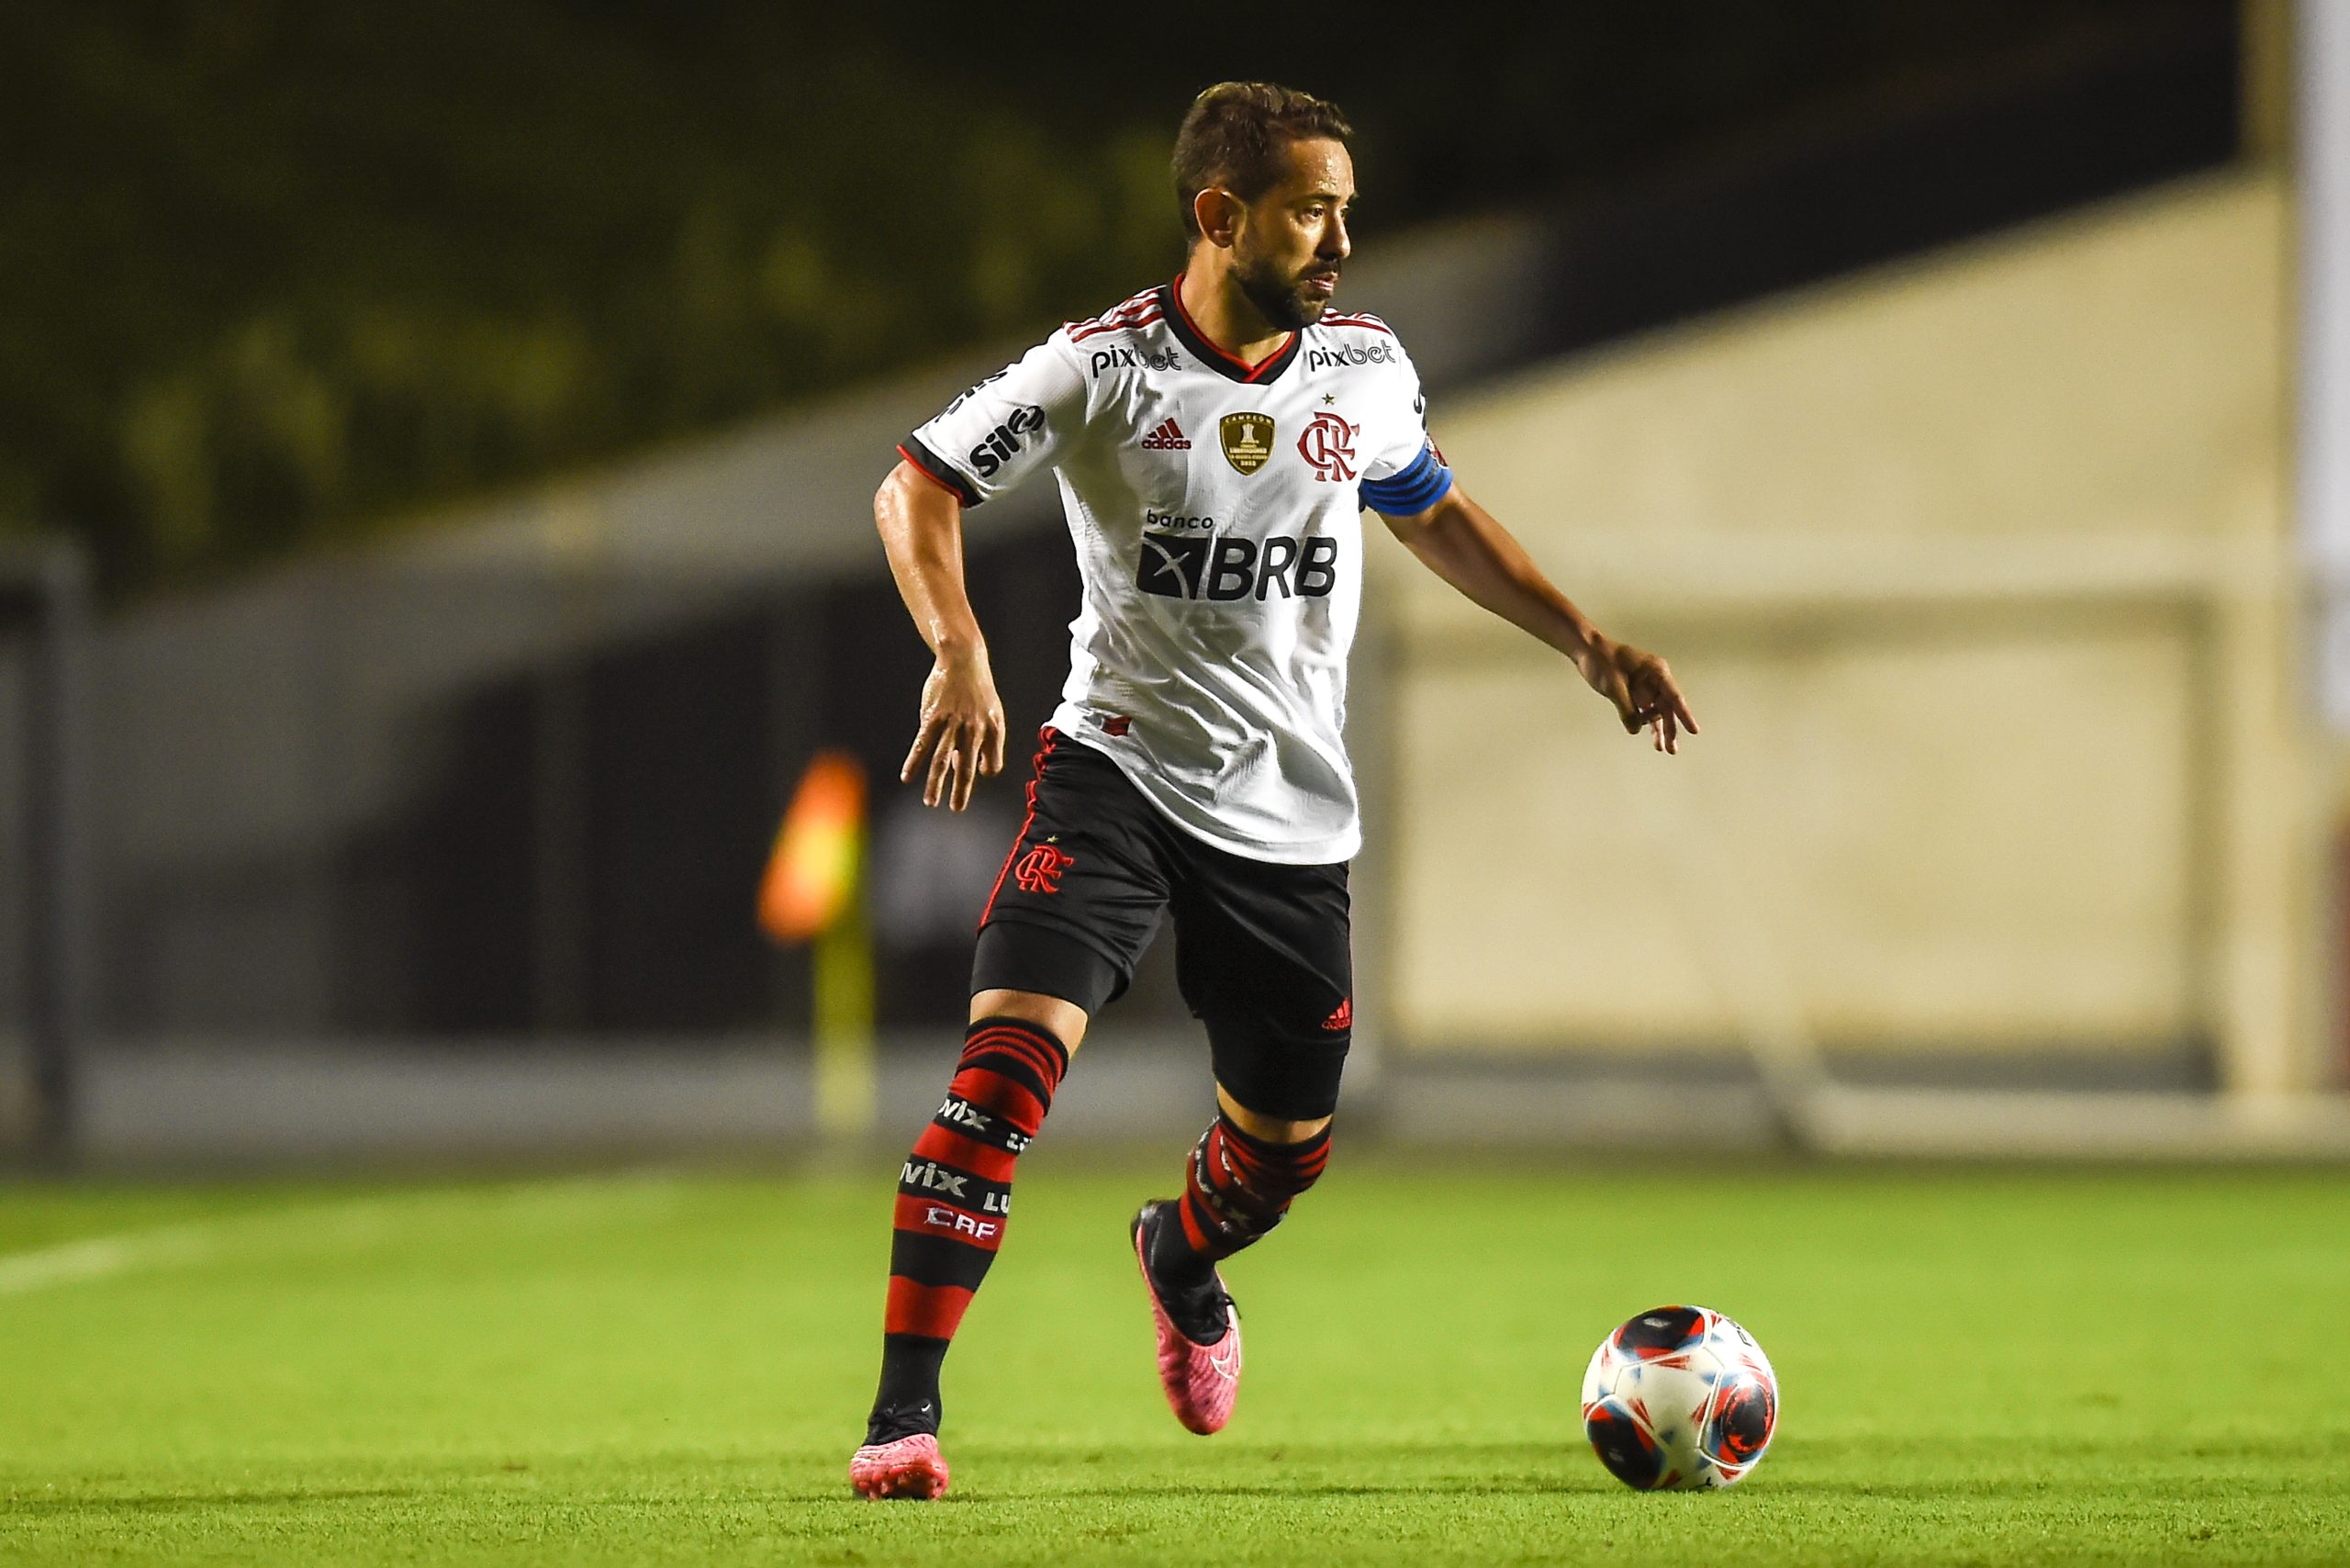 ‘Poderia ser pior’, diz Everton Ribeiro em desembarque do Flamengo no Rio após derrota para o Del Valle